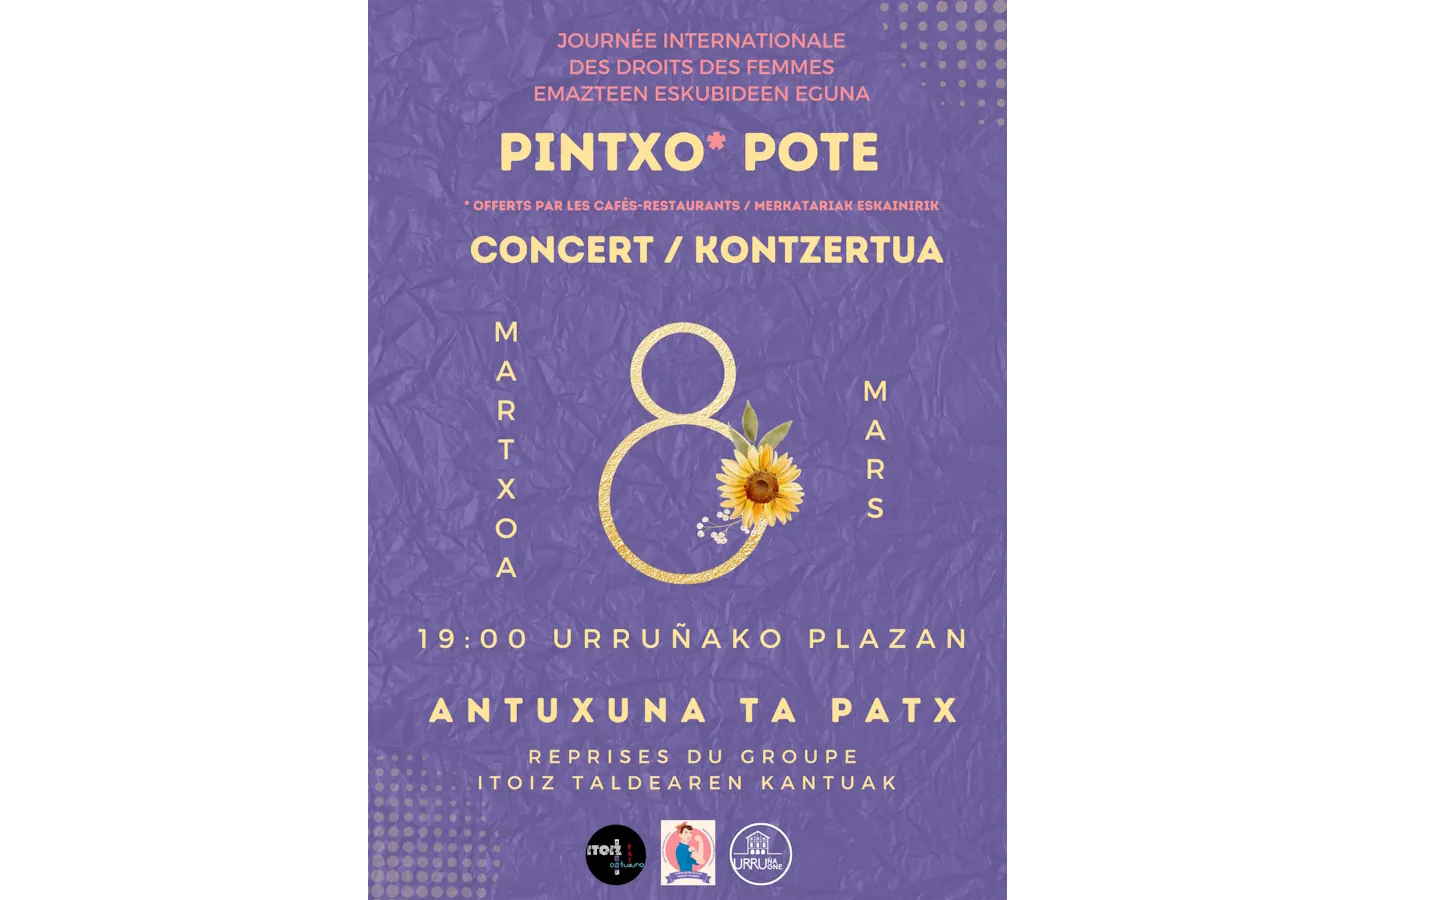 Journée internationale des droits des femmes Pintxo Pote